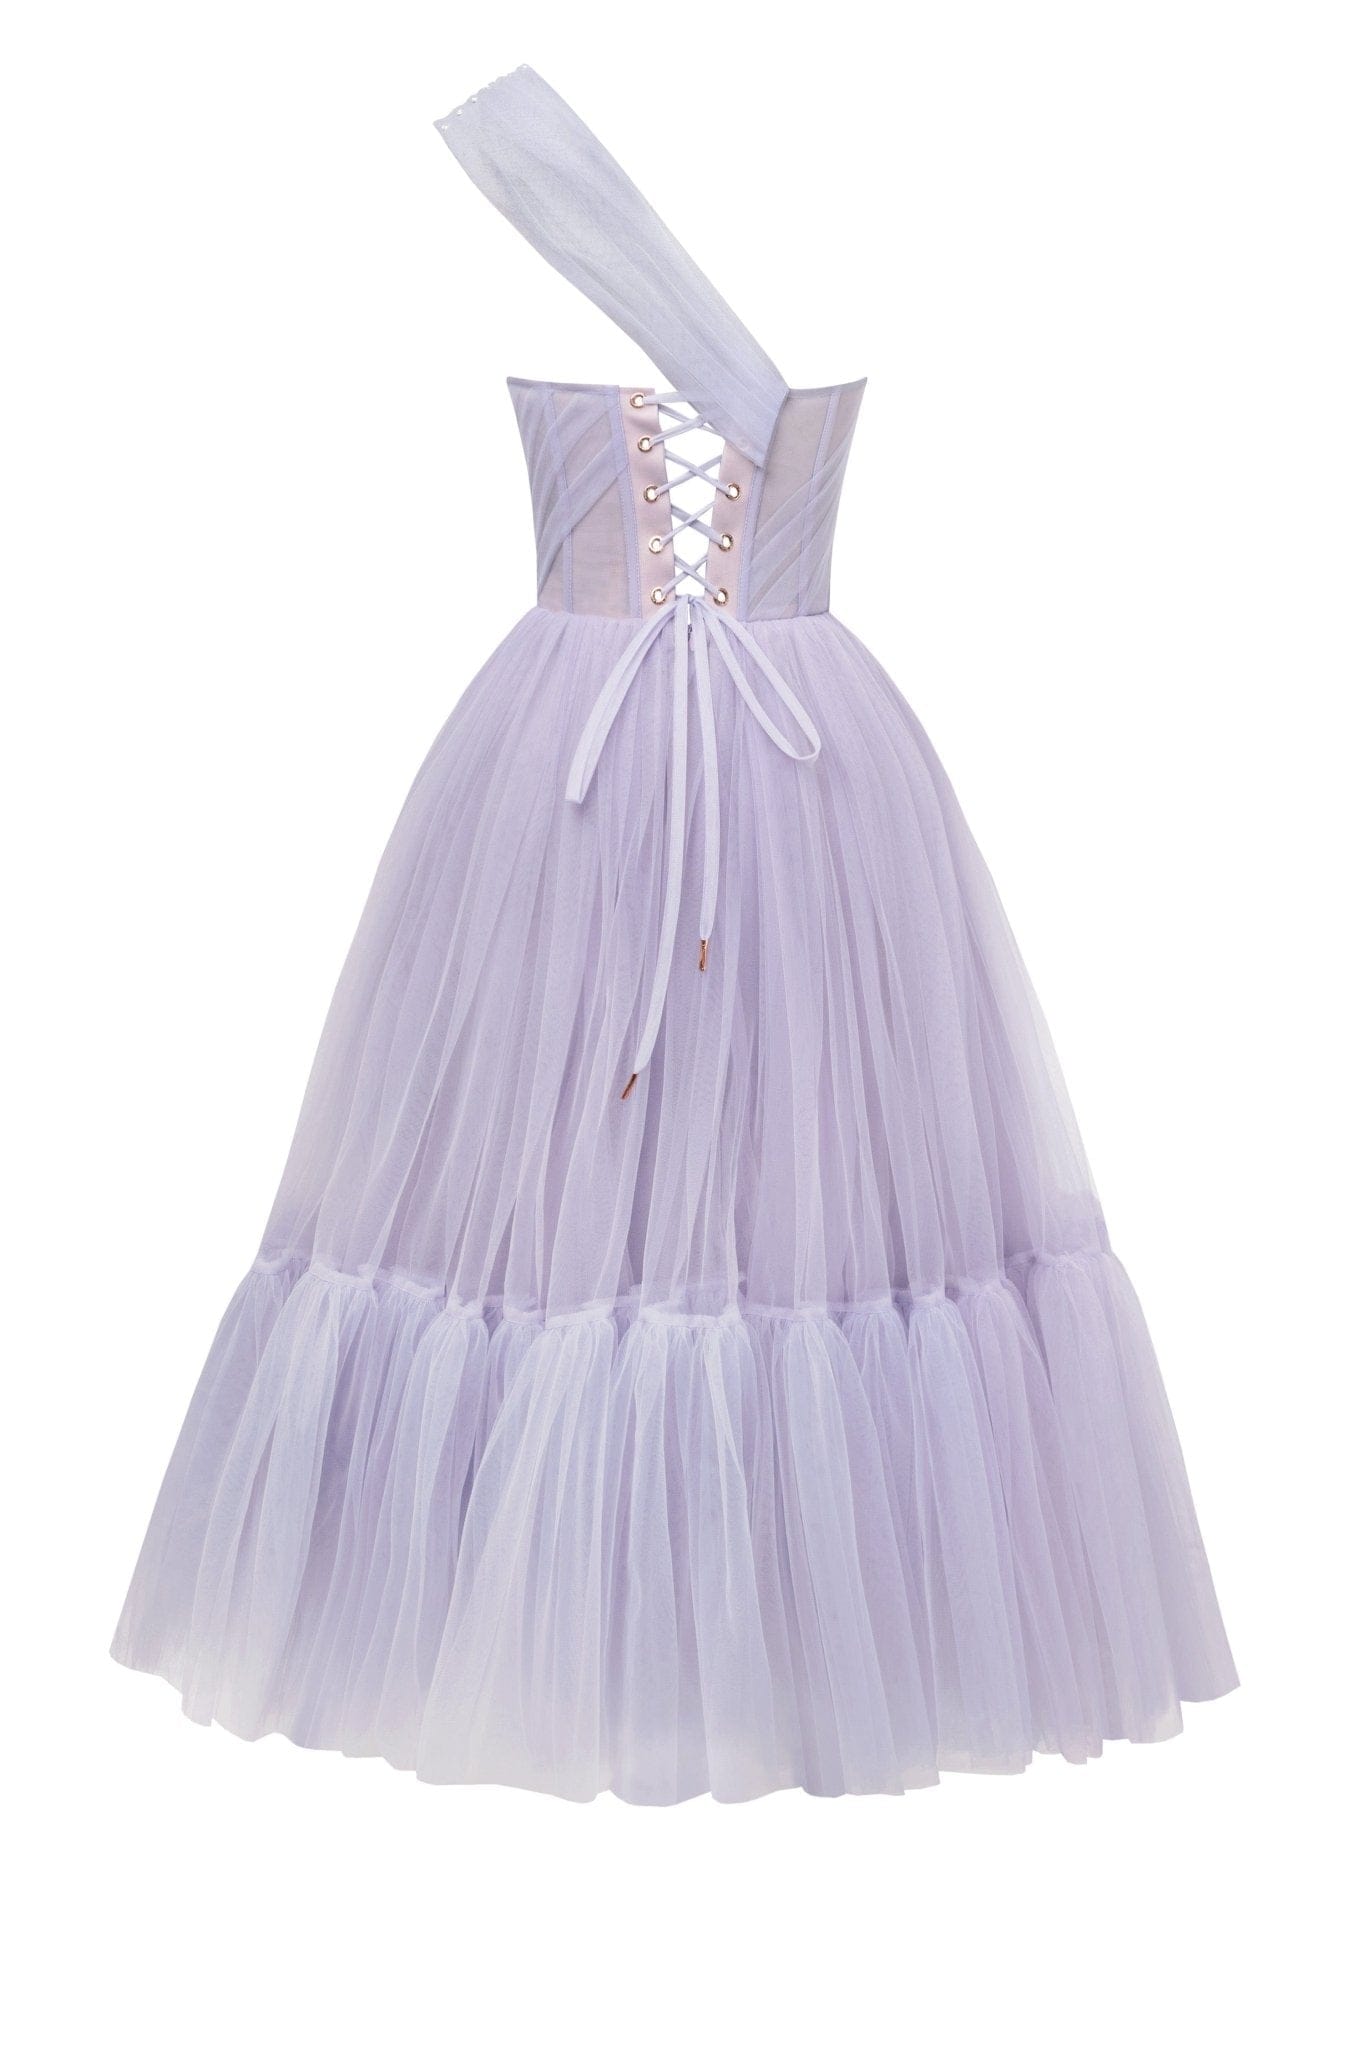 Lavender One-Shoulder Cocktail Tulle Dress - Milla